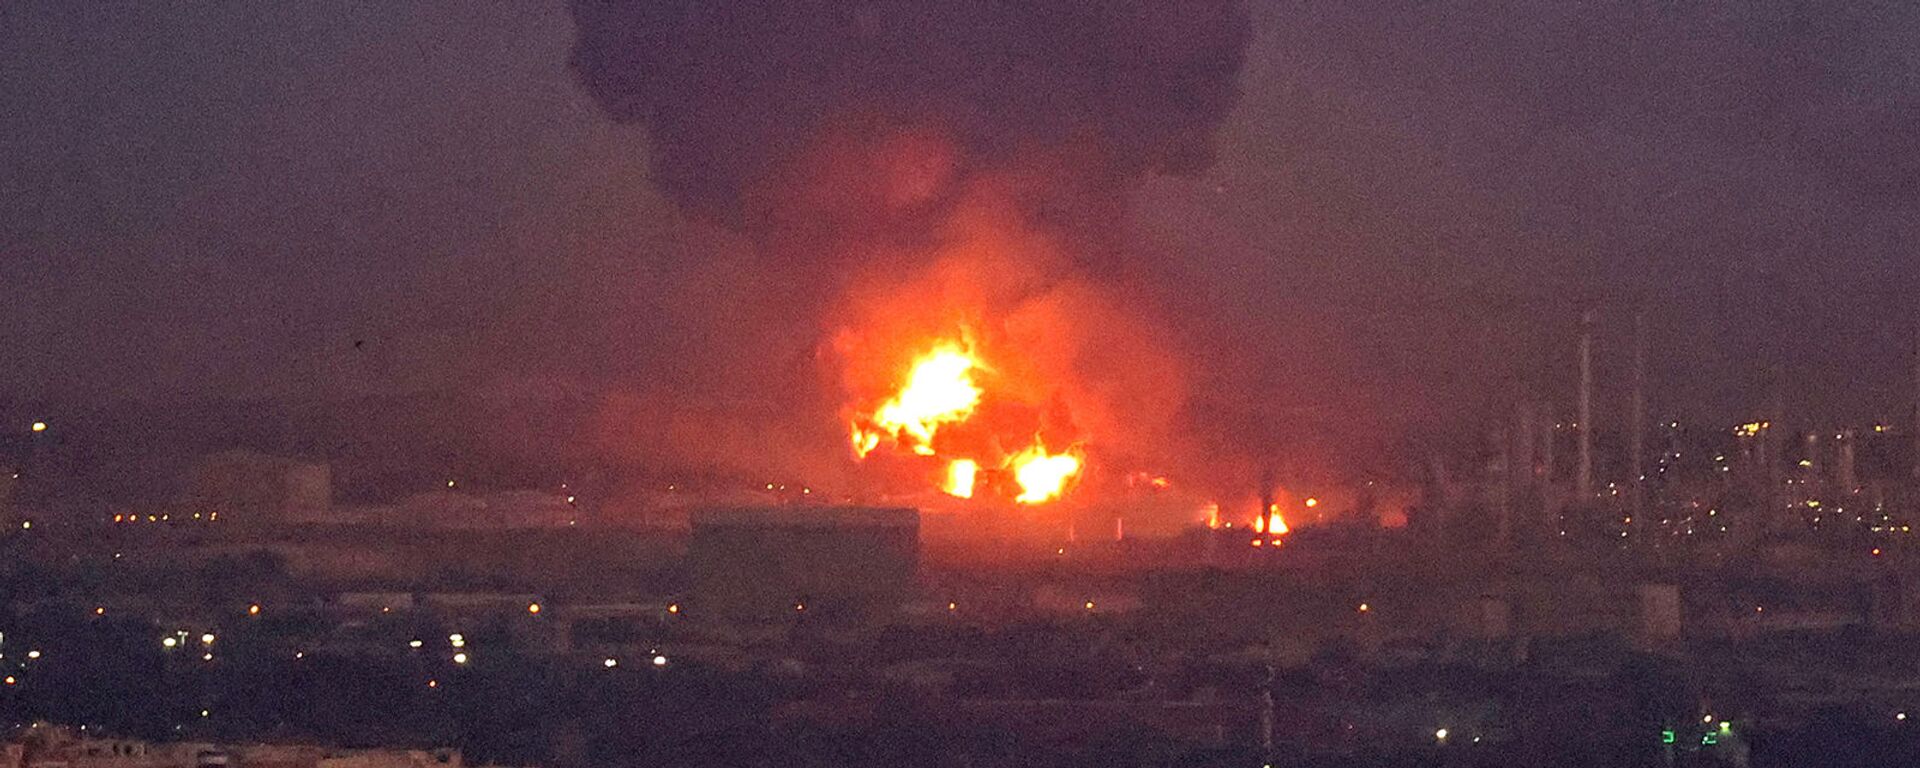 Пожар на нефтеперерабатывающем заводе Тегерана (2 июня 2021). Иран - Sputnik Армения, 1920, 07.06.2021